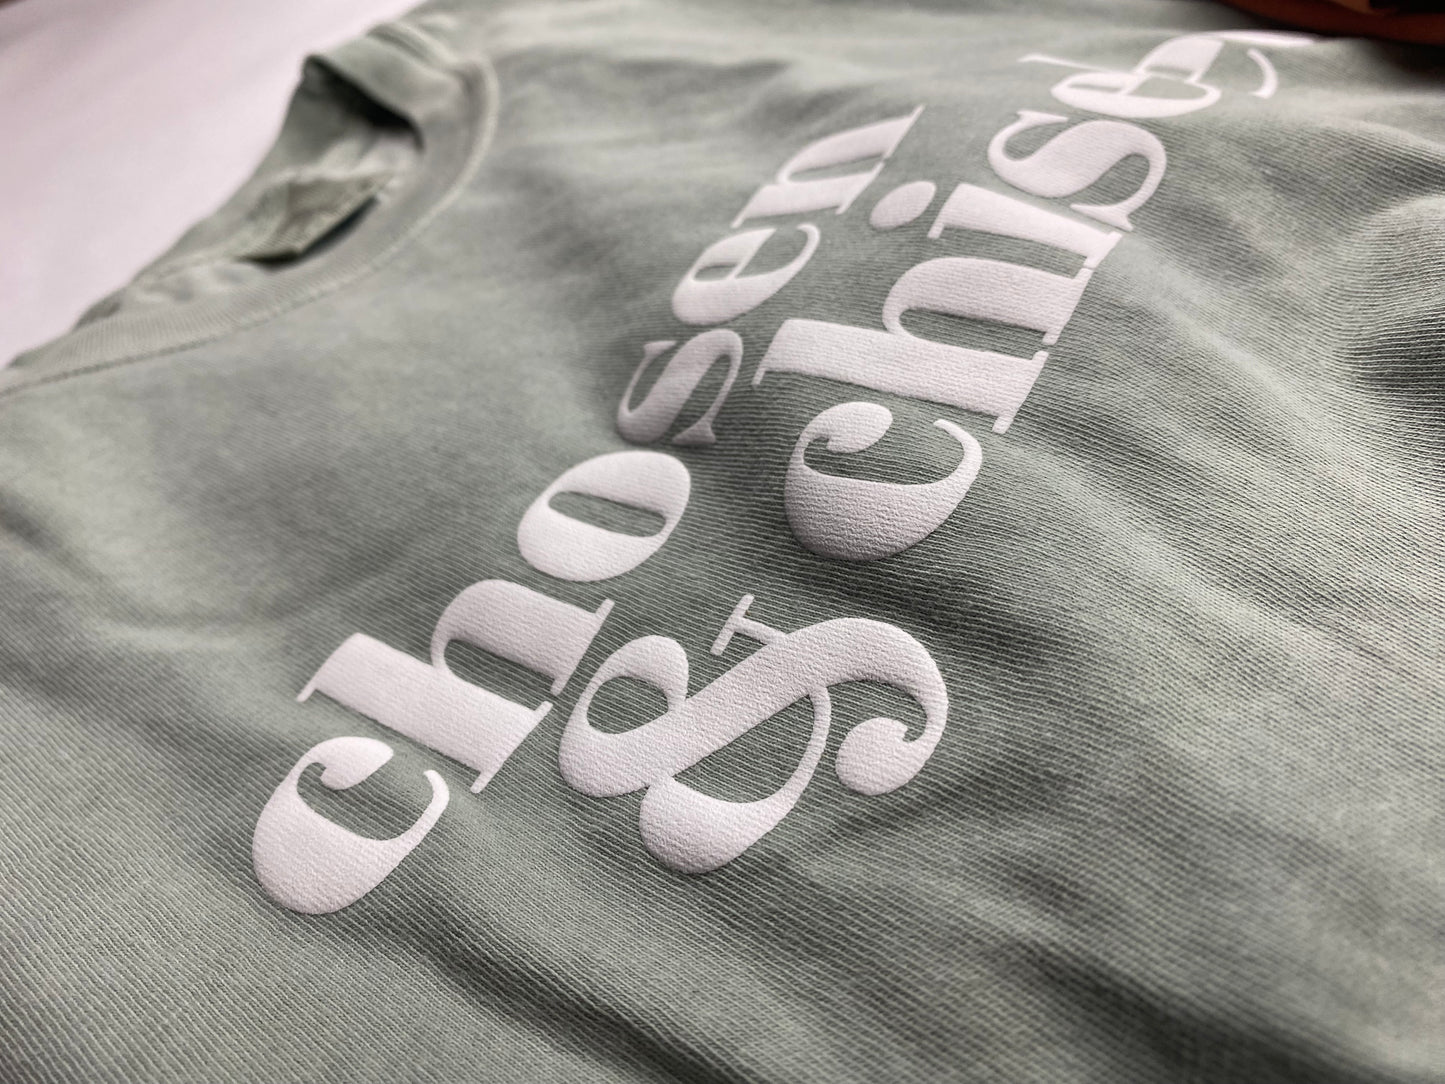 Chosen & Chiseled T-Shirt (Sage)